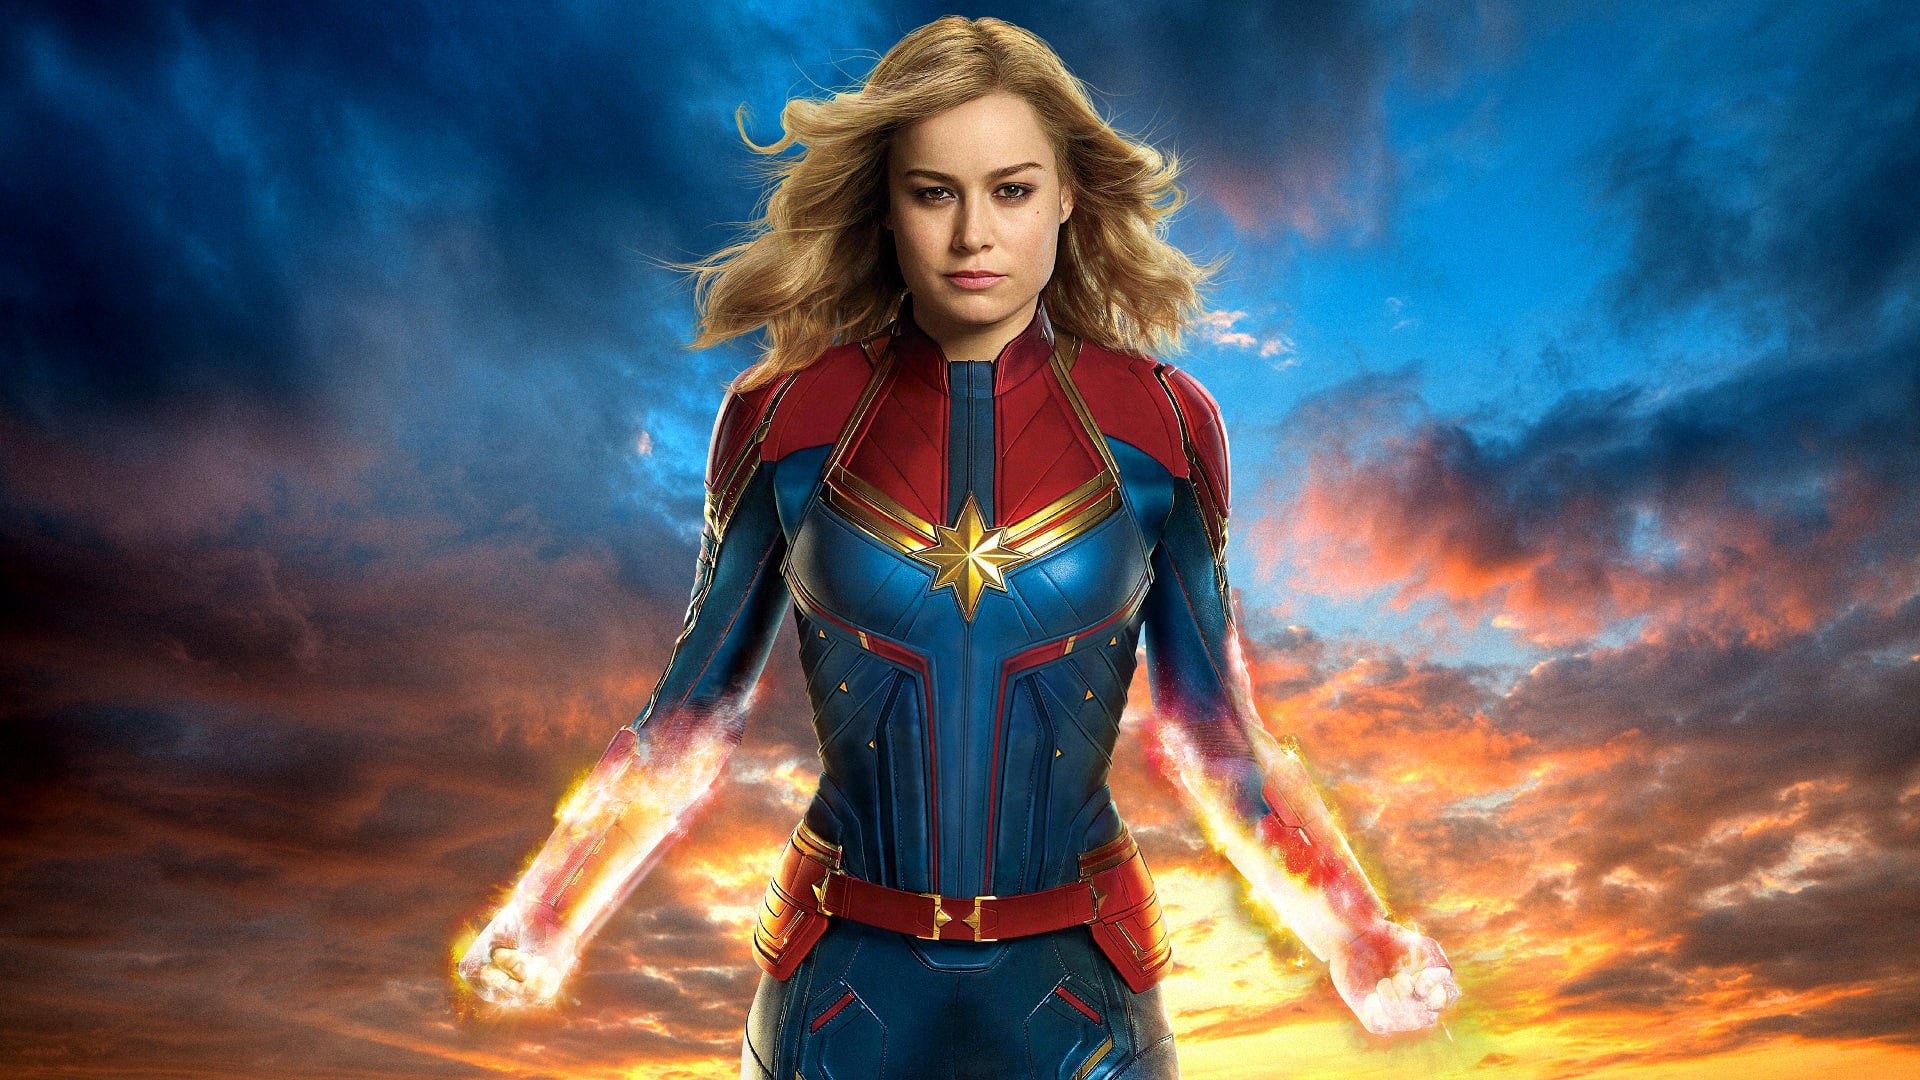 Vingadores: Ultimato | Como a estrutura de Capitã Marvel influenciou o trailer